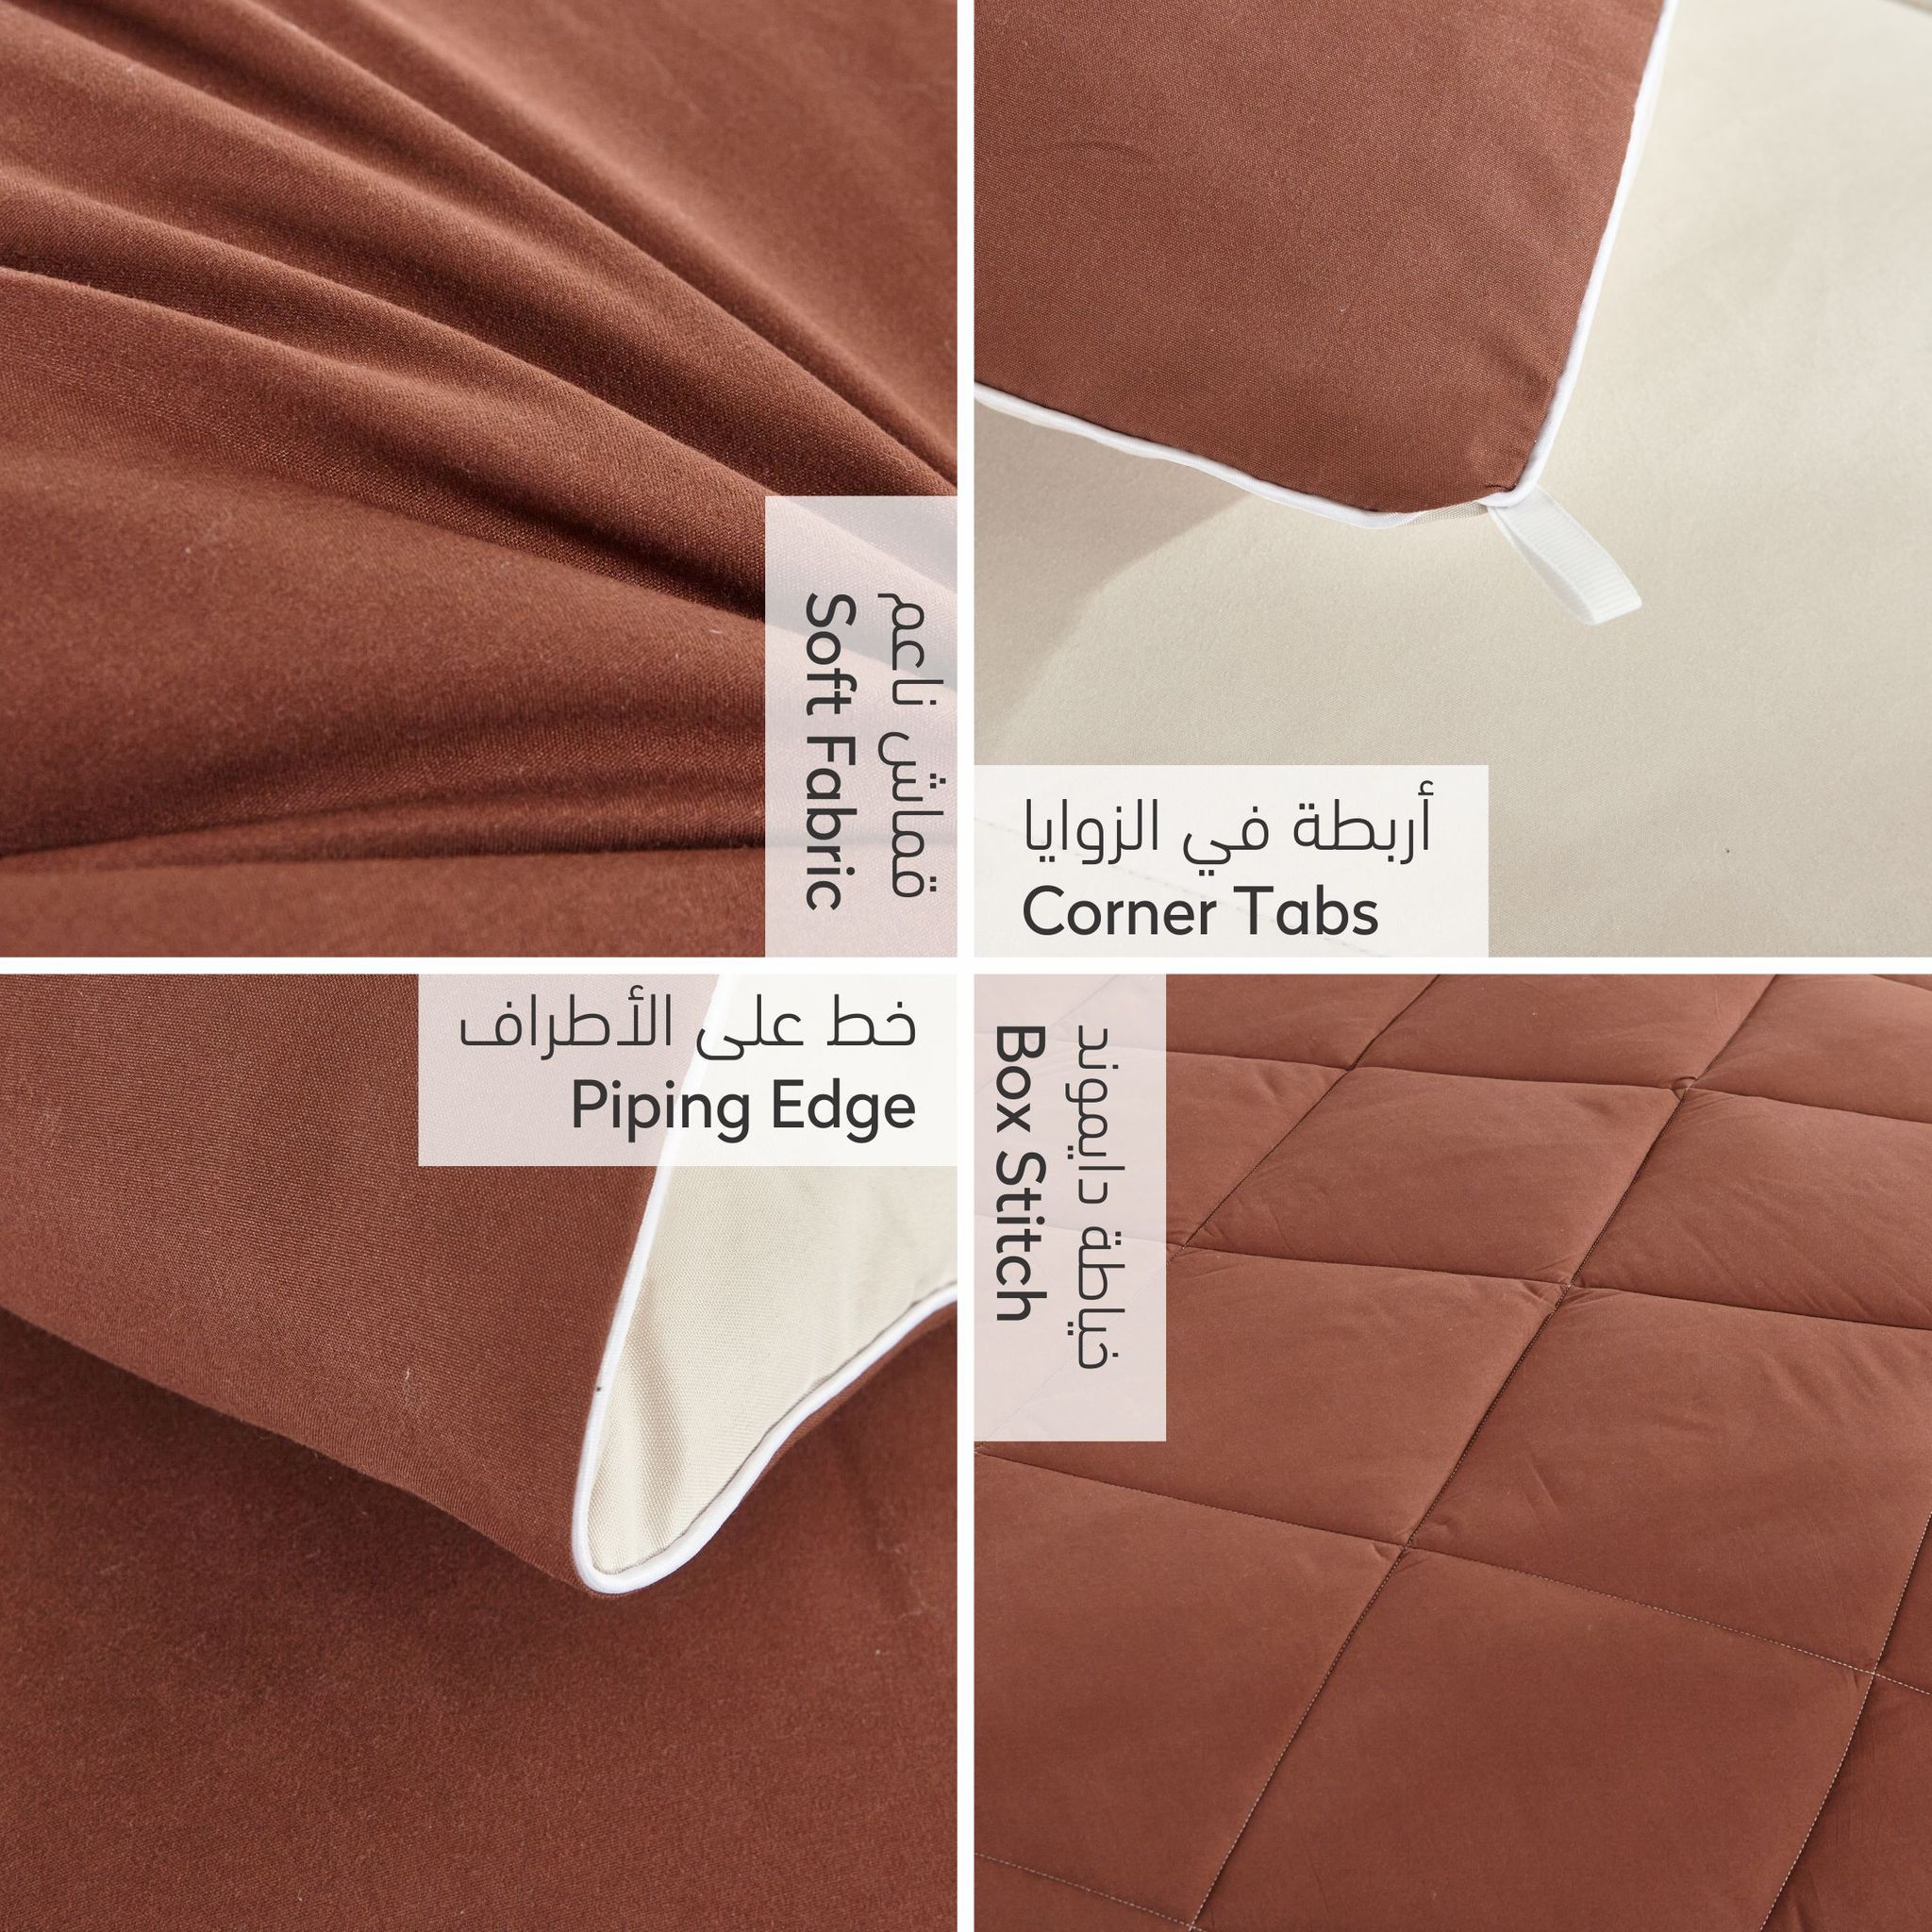 Diamond Quilted Reversible Comforter Set 4-Piece Twin Brown/Beige